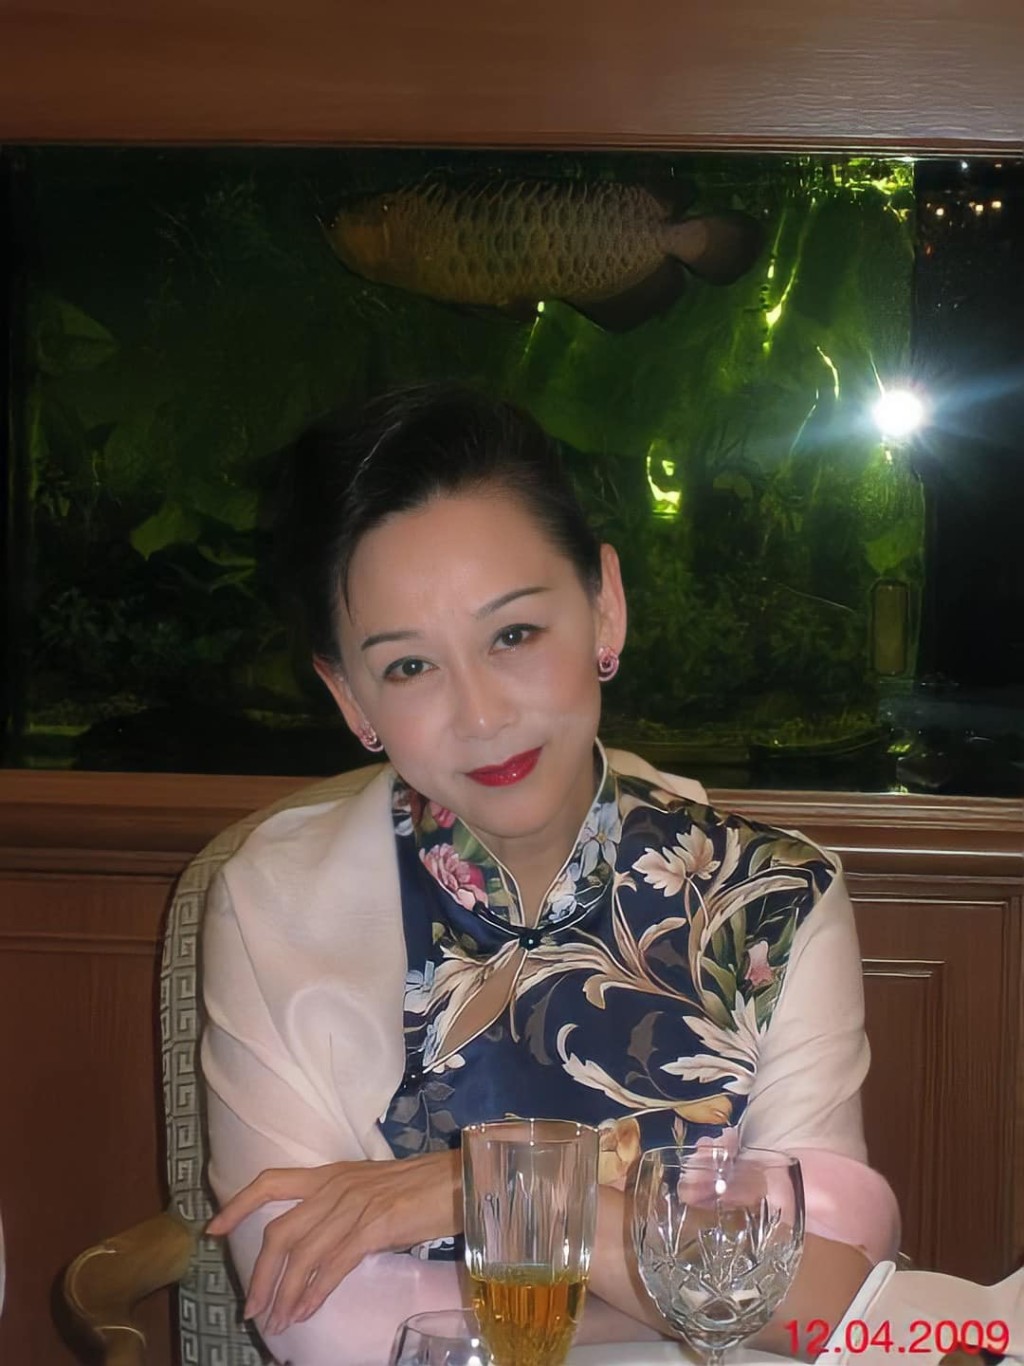 近日甄珍的好友歐偉毅在FB貼上多張姚蘇蓉的近照。